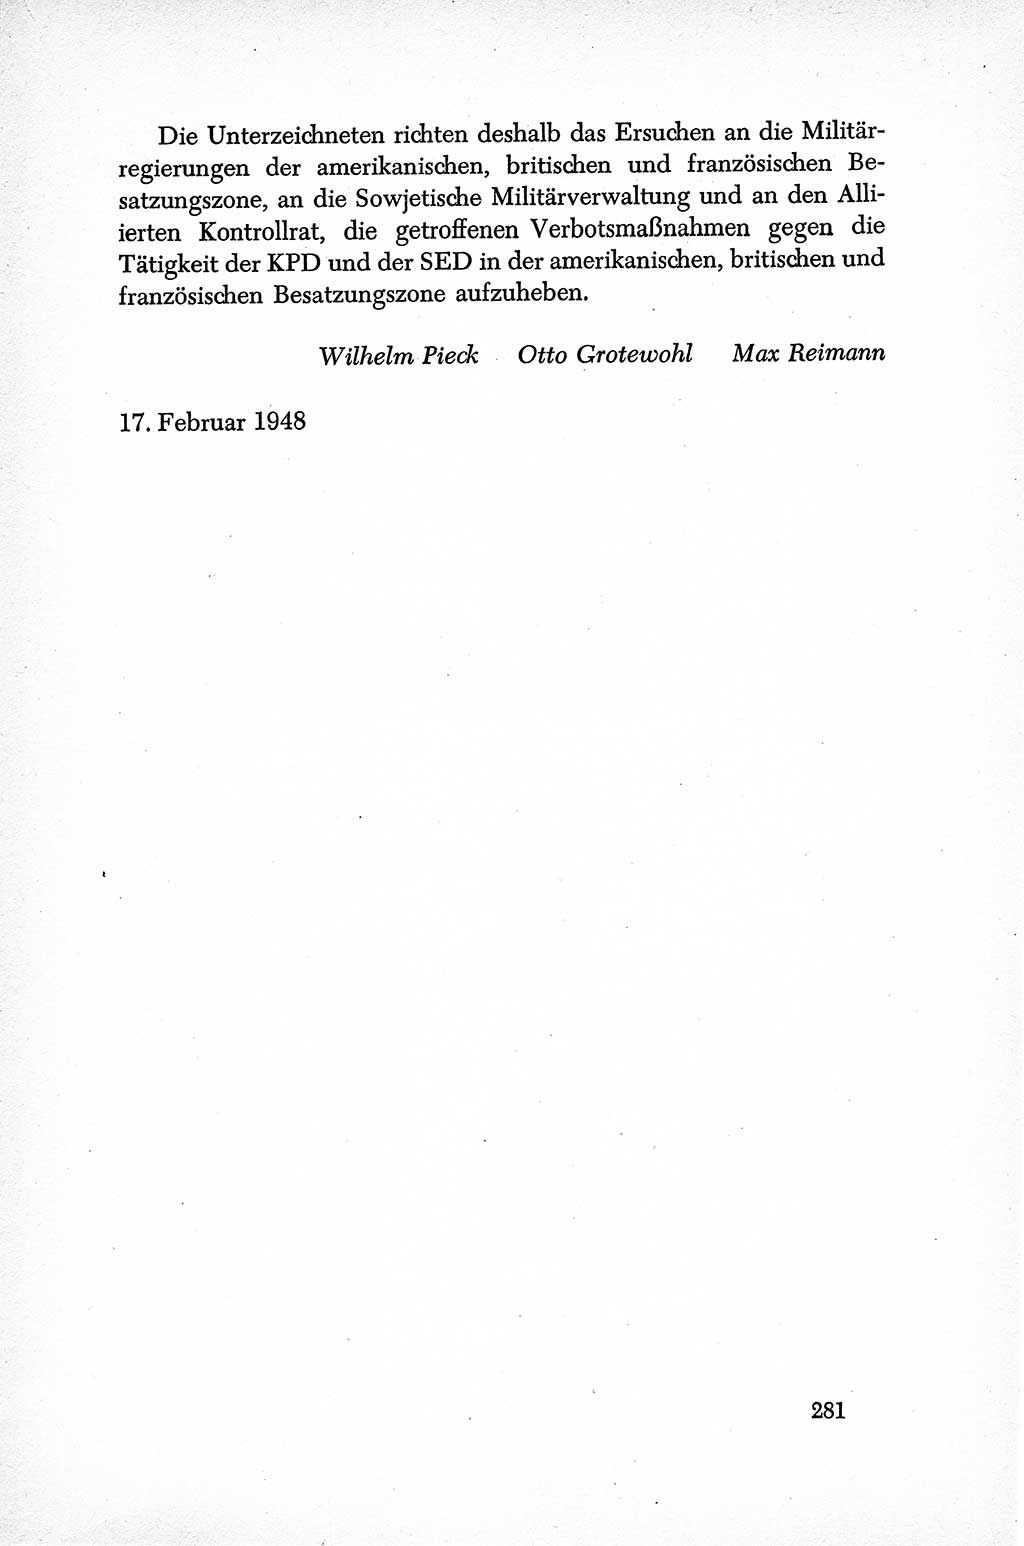 Dokumente der Sozialistischen Einheitspartei Deutschlands (SED) [Sowjetische Besatzungszone (SBZ) Deutschlands] 1946-1948, Seite 281 (Dok. SED SBZ Dtl. 1946-1948, S. 281)